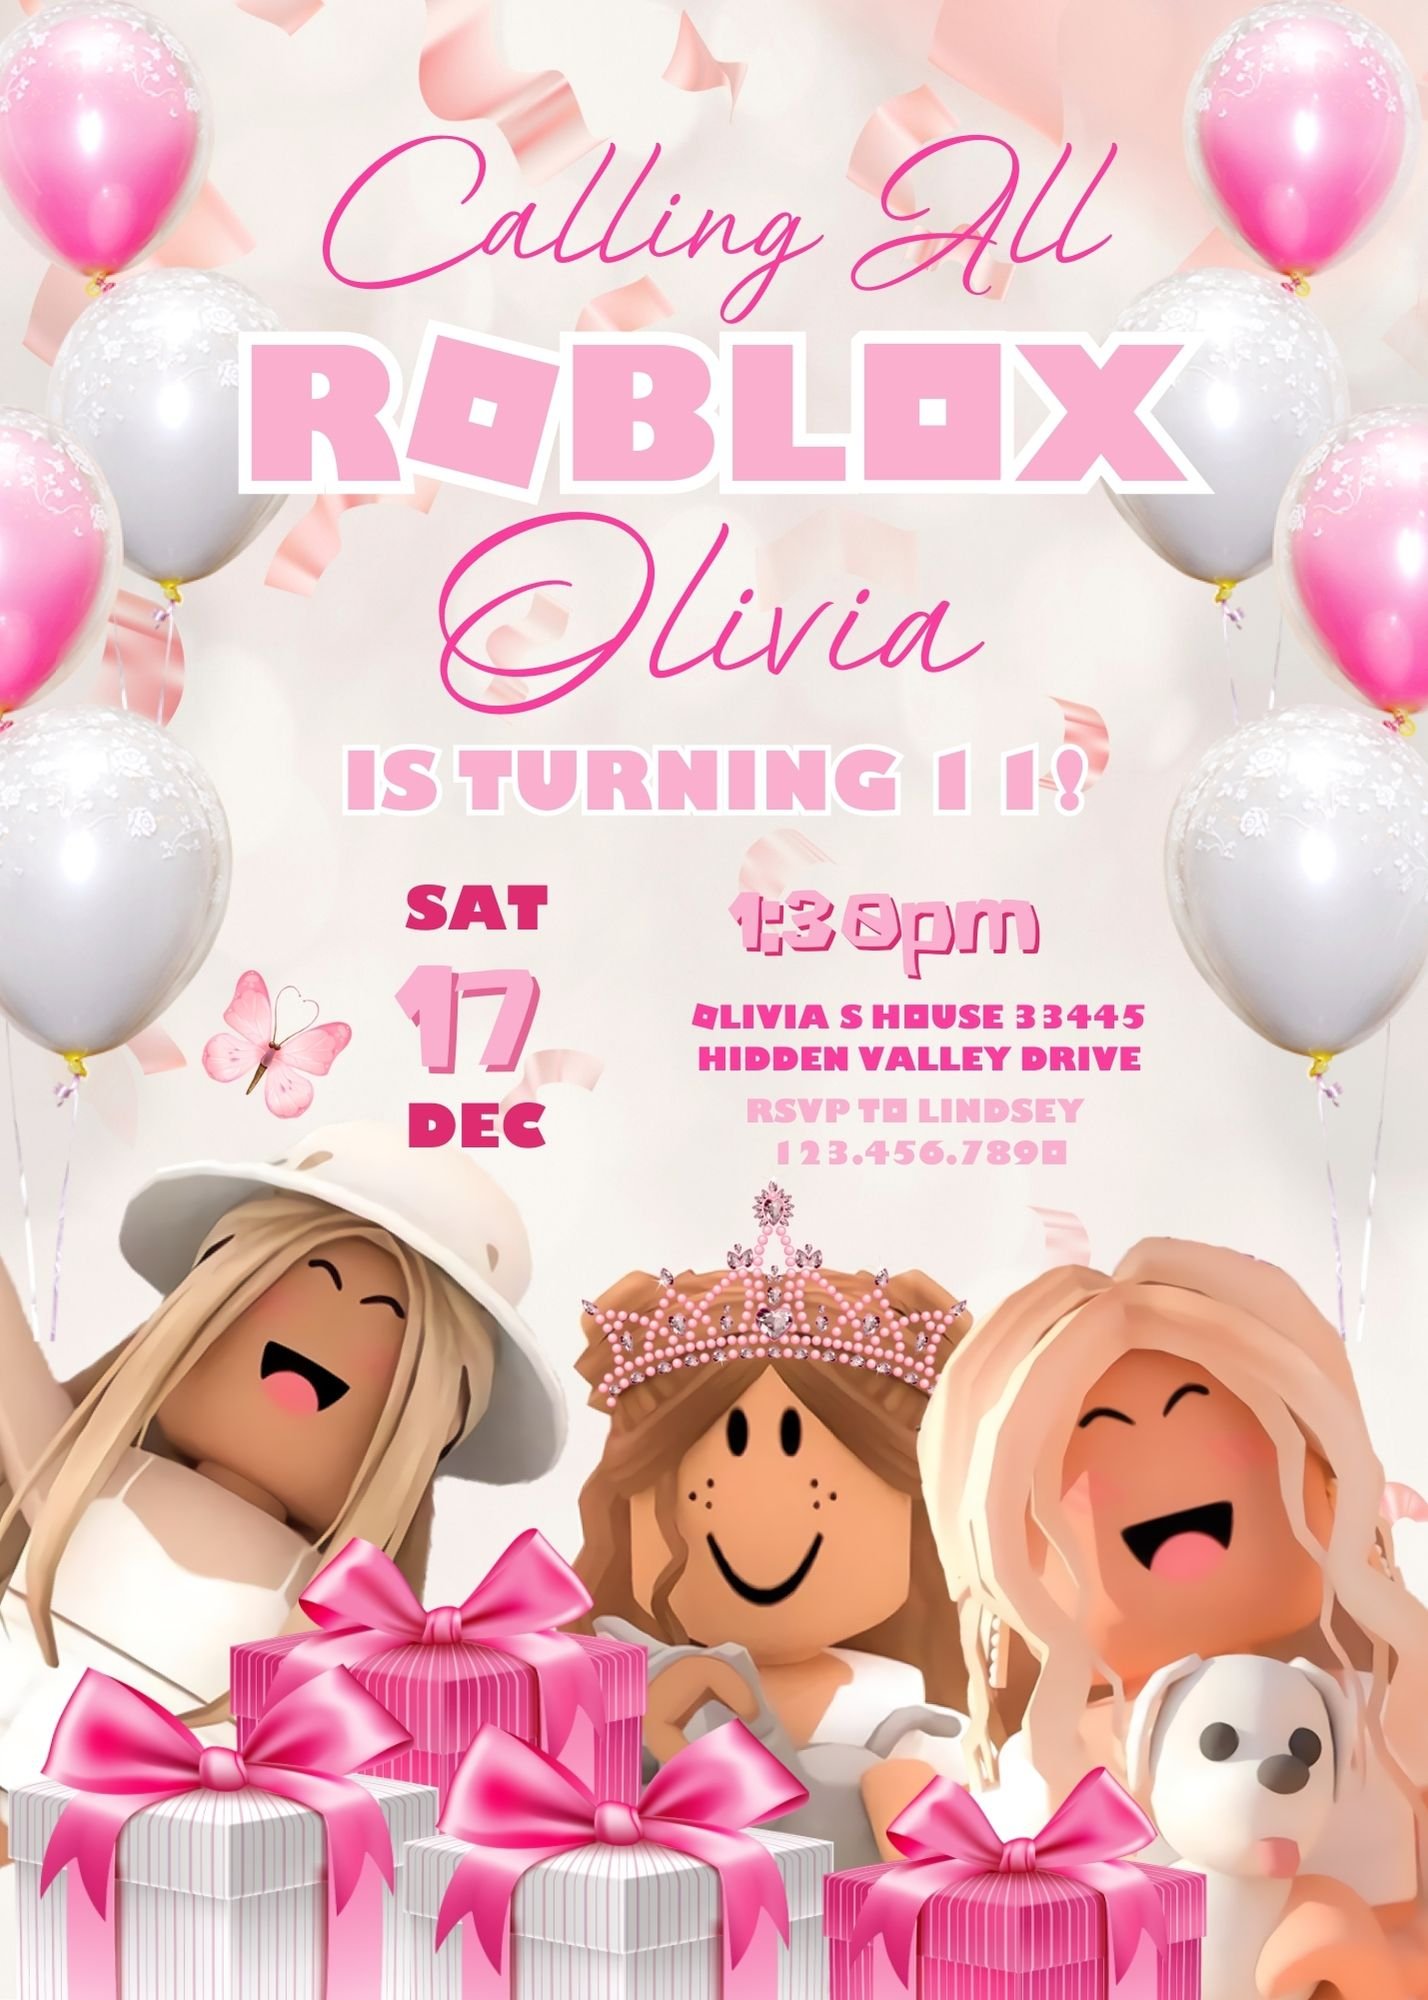 Roblox Invitation, Roblox Birthday Party Invitations Template